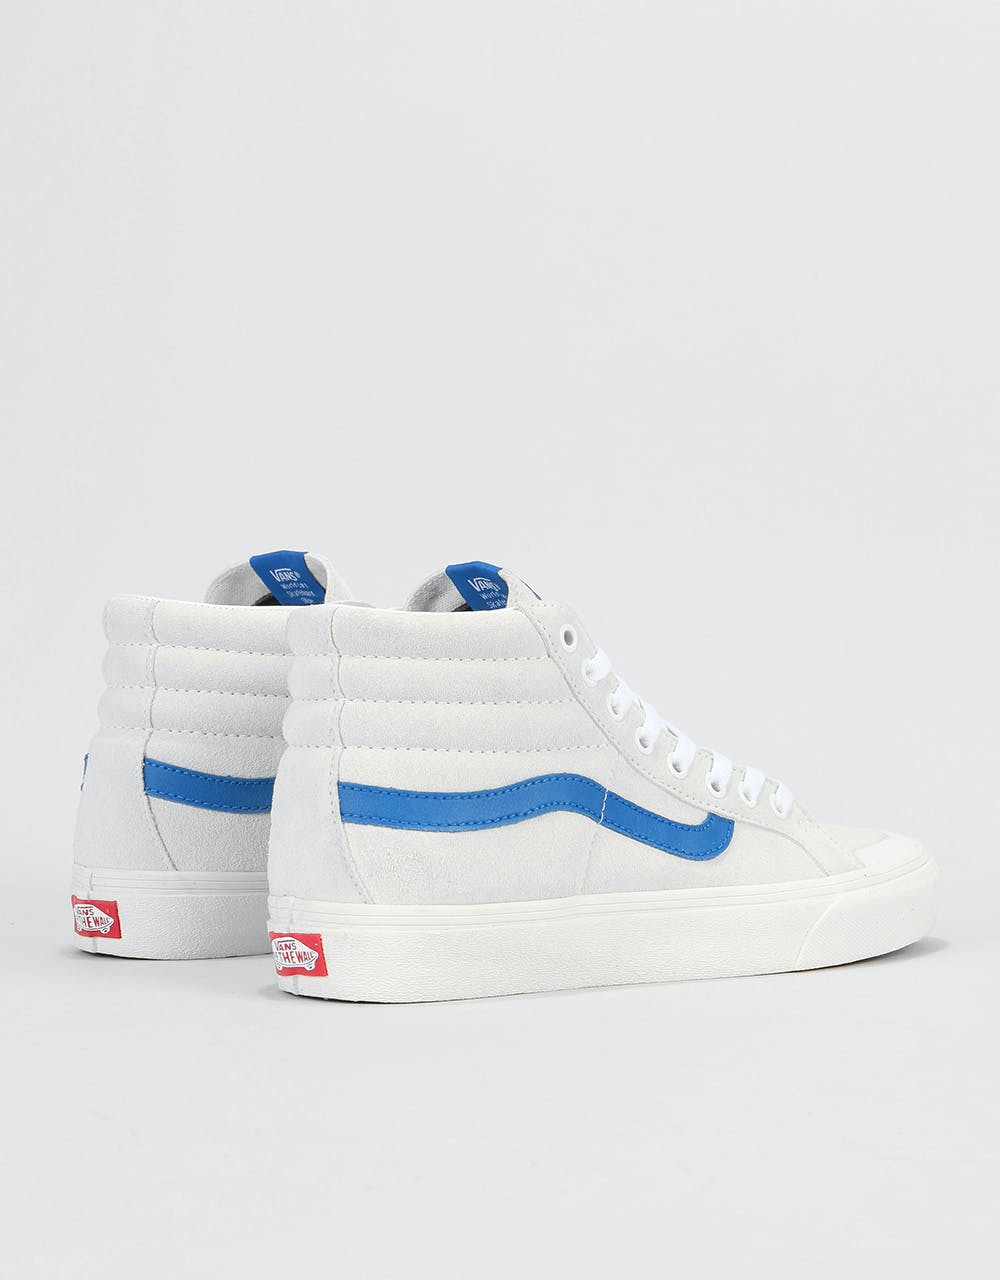 Vans Sk8-Hi Reissue 138 Skate Shoes - True White/Lapis Blue